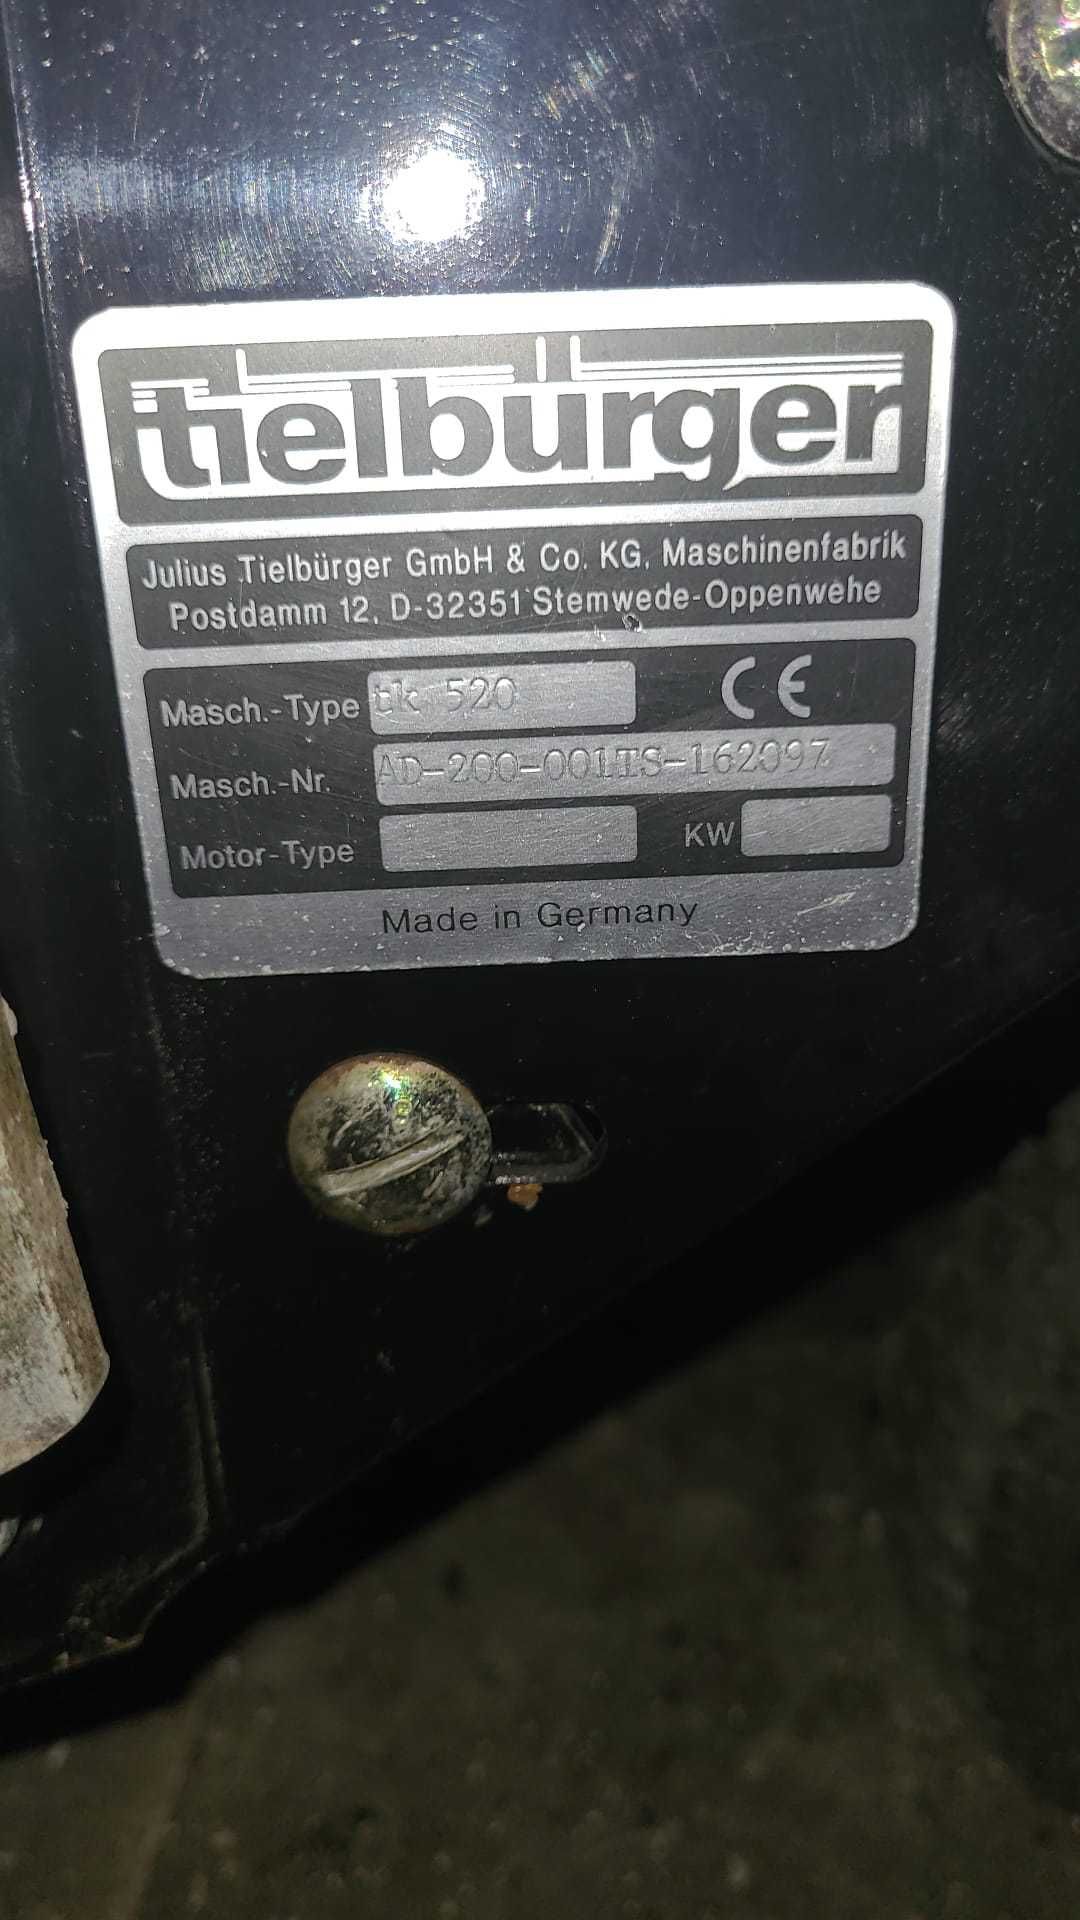 Zamiatarka Tielburger TK 520 mało używana